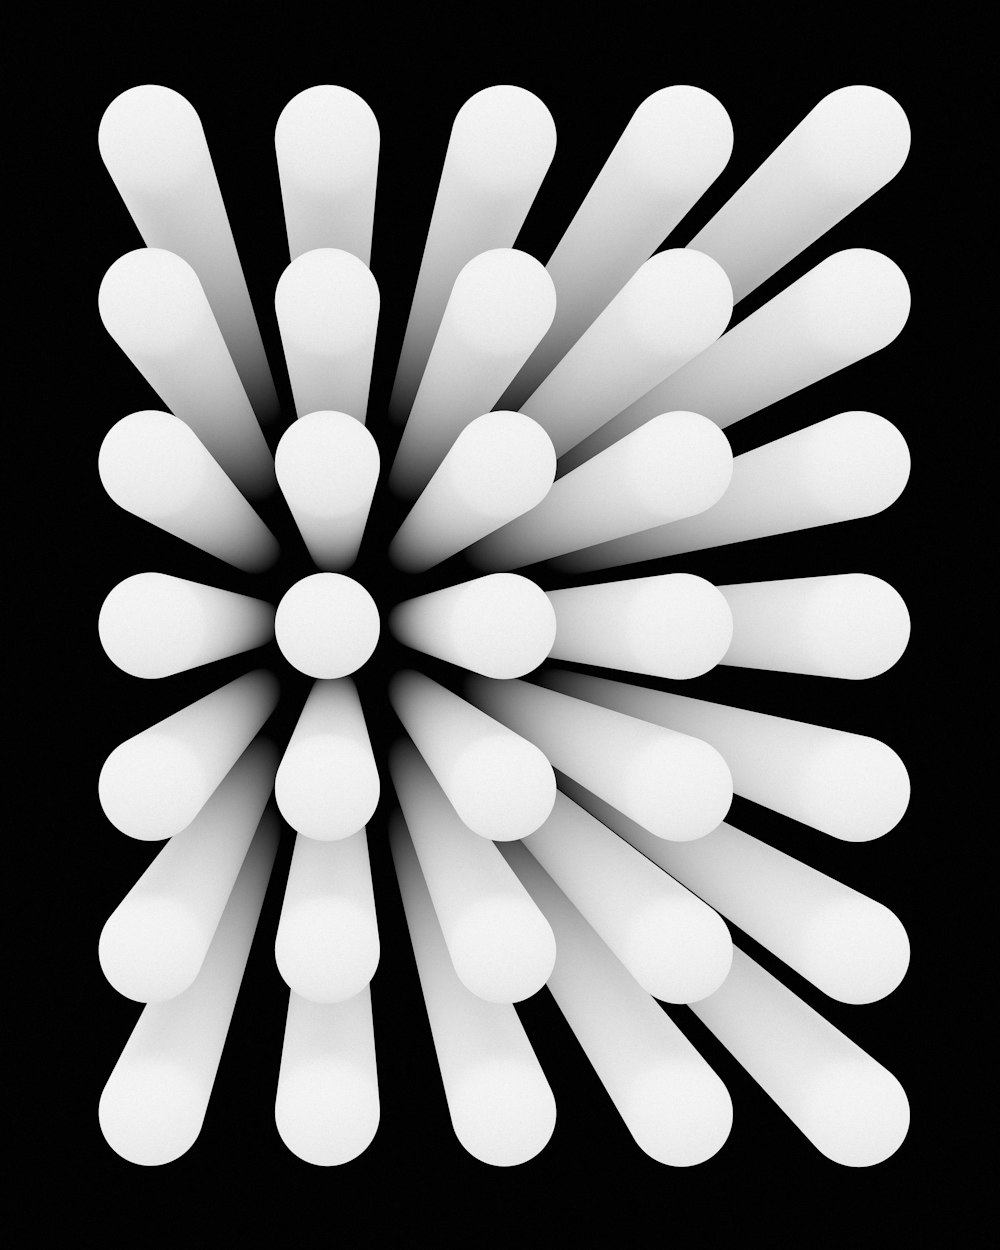 Ein Schwarz-Weiß-Foto eines kreisförmigen Objekts